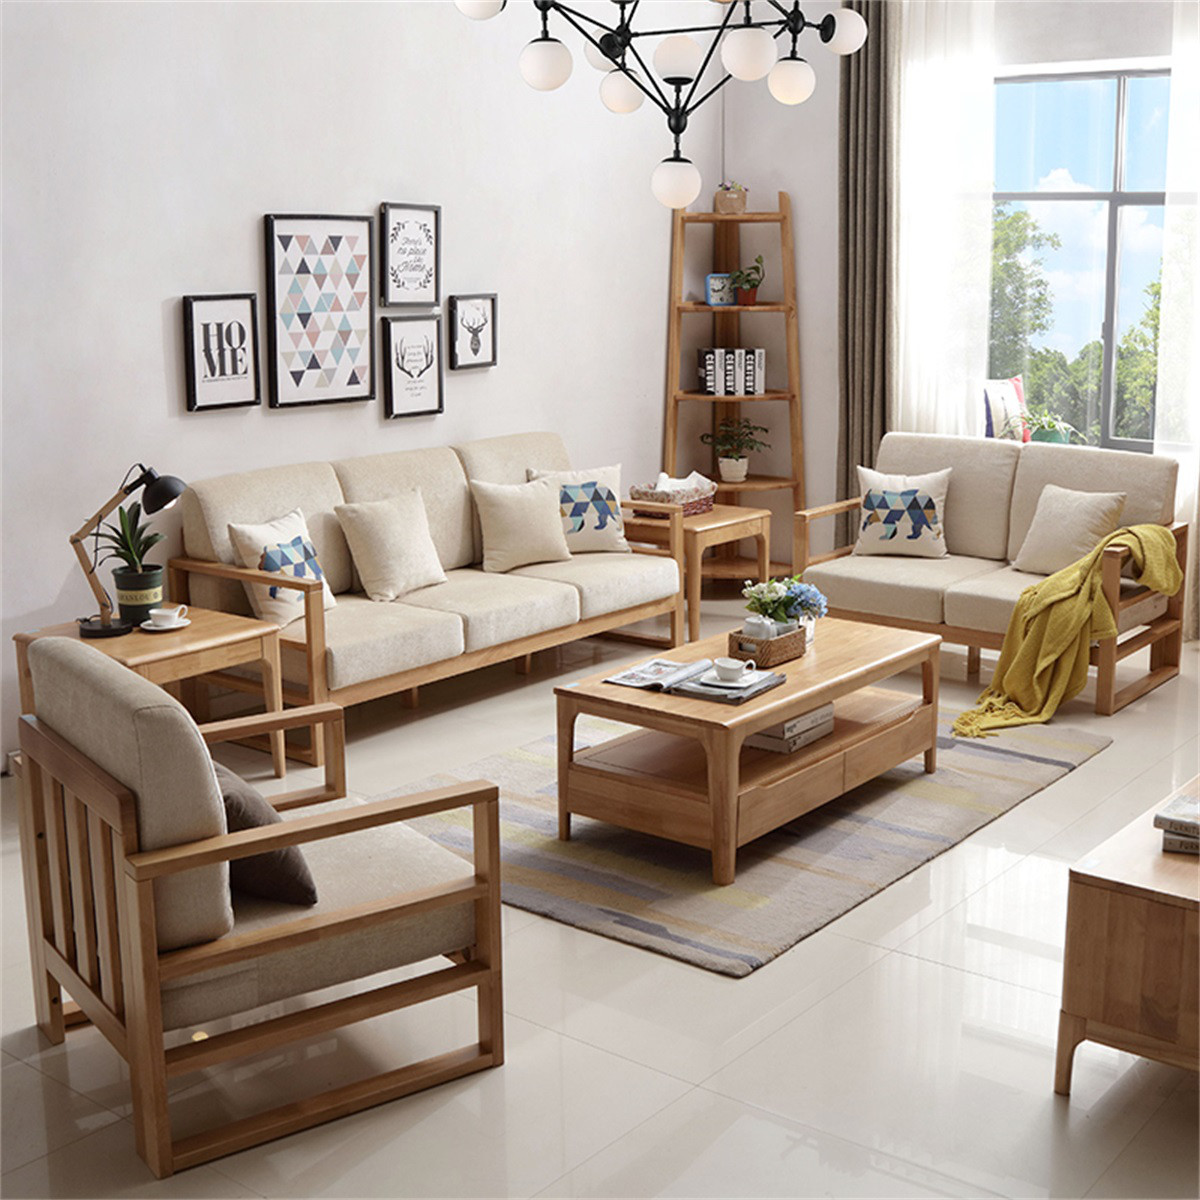 北欧全实木沙发组合简约现代小户型双人三人沙发客厅家具